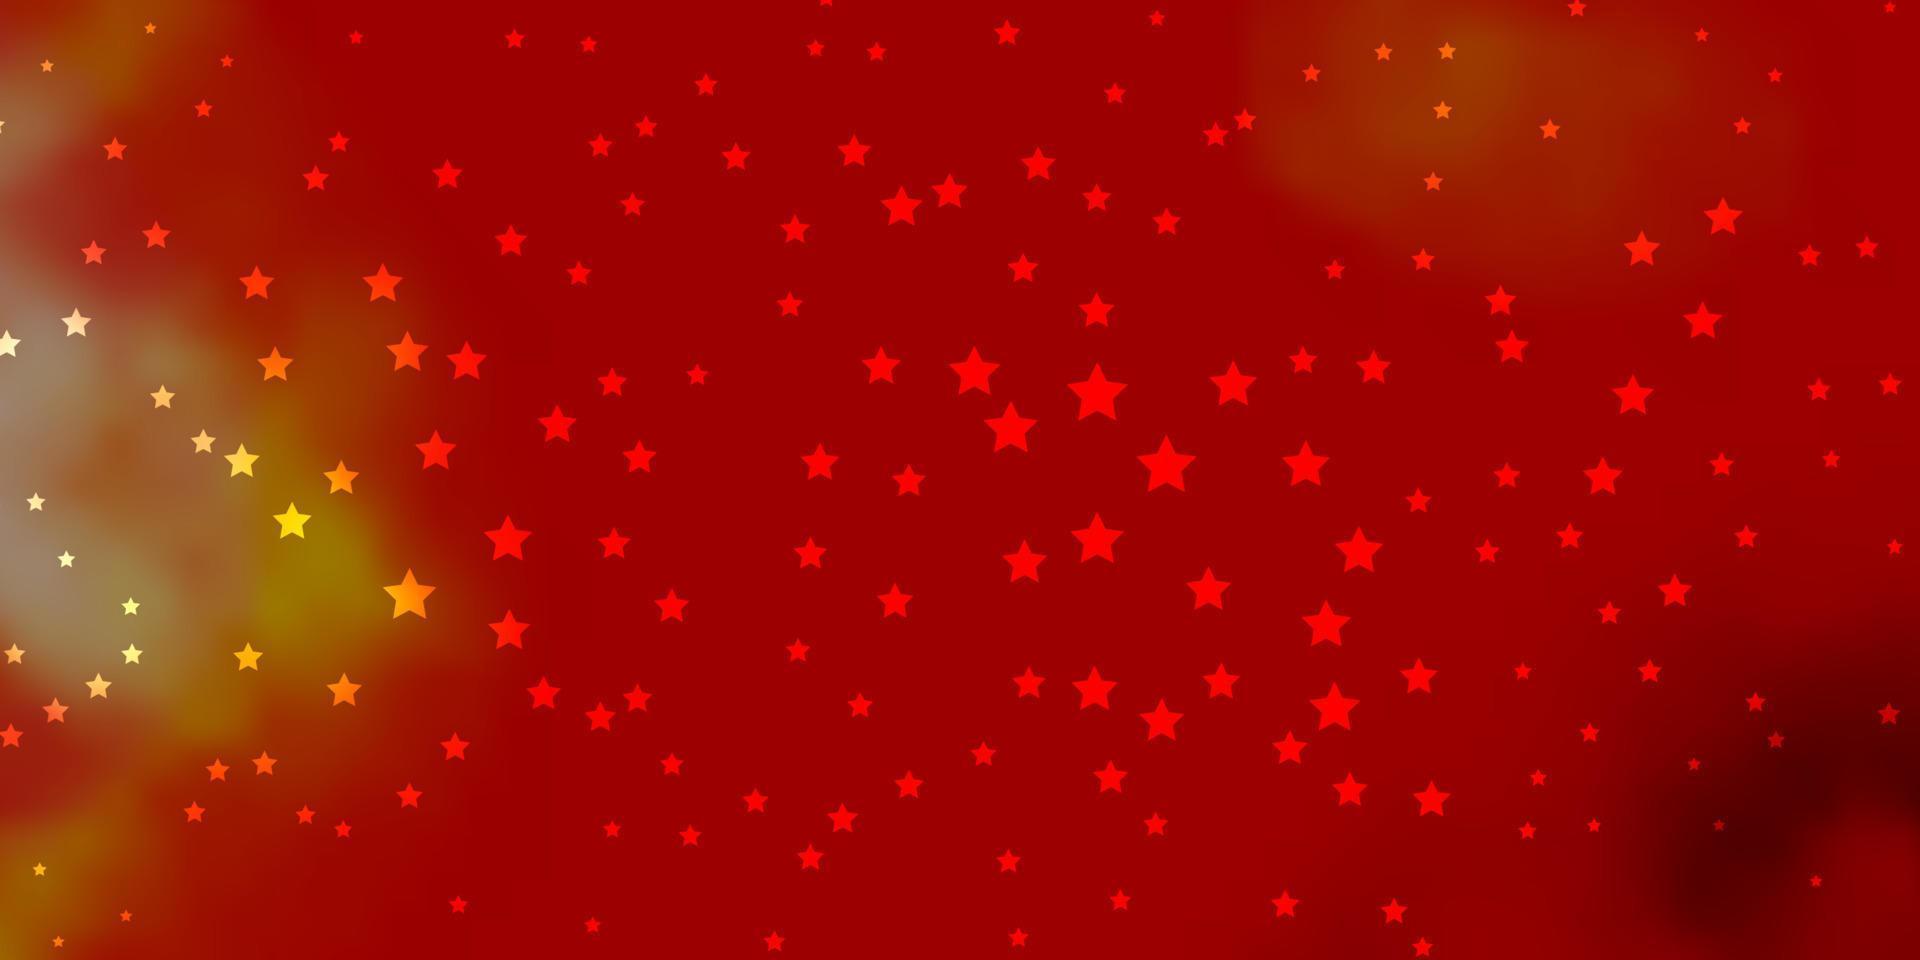 fond de vecteur rouge et jaune foncé avec de petites et grandes étoiles.